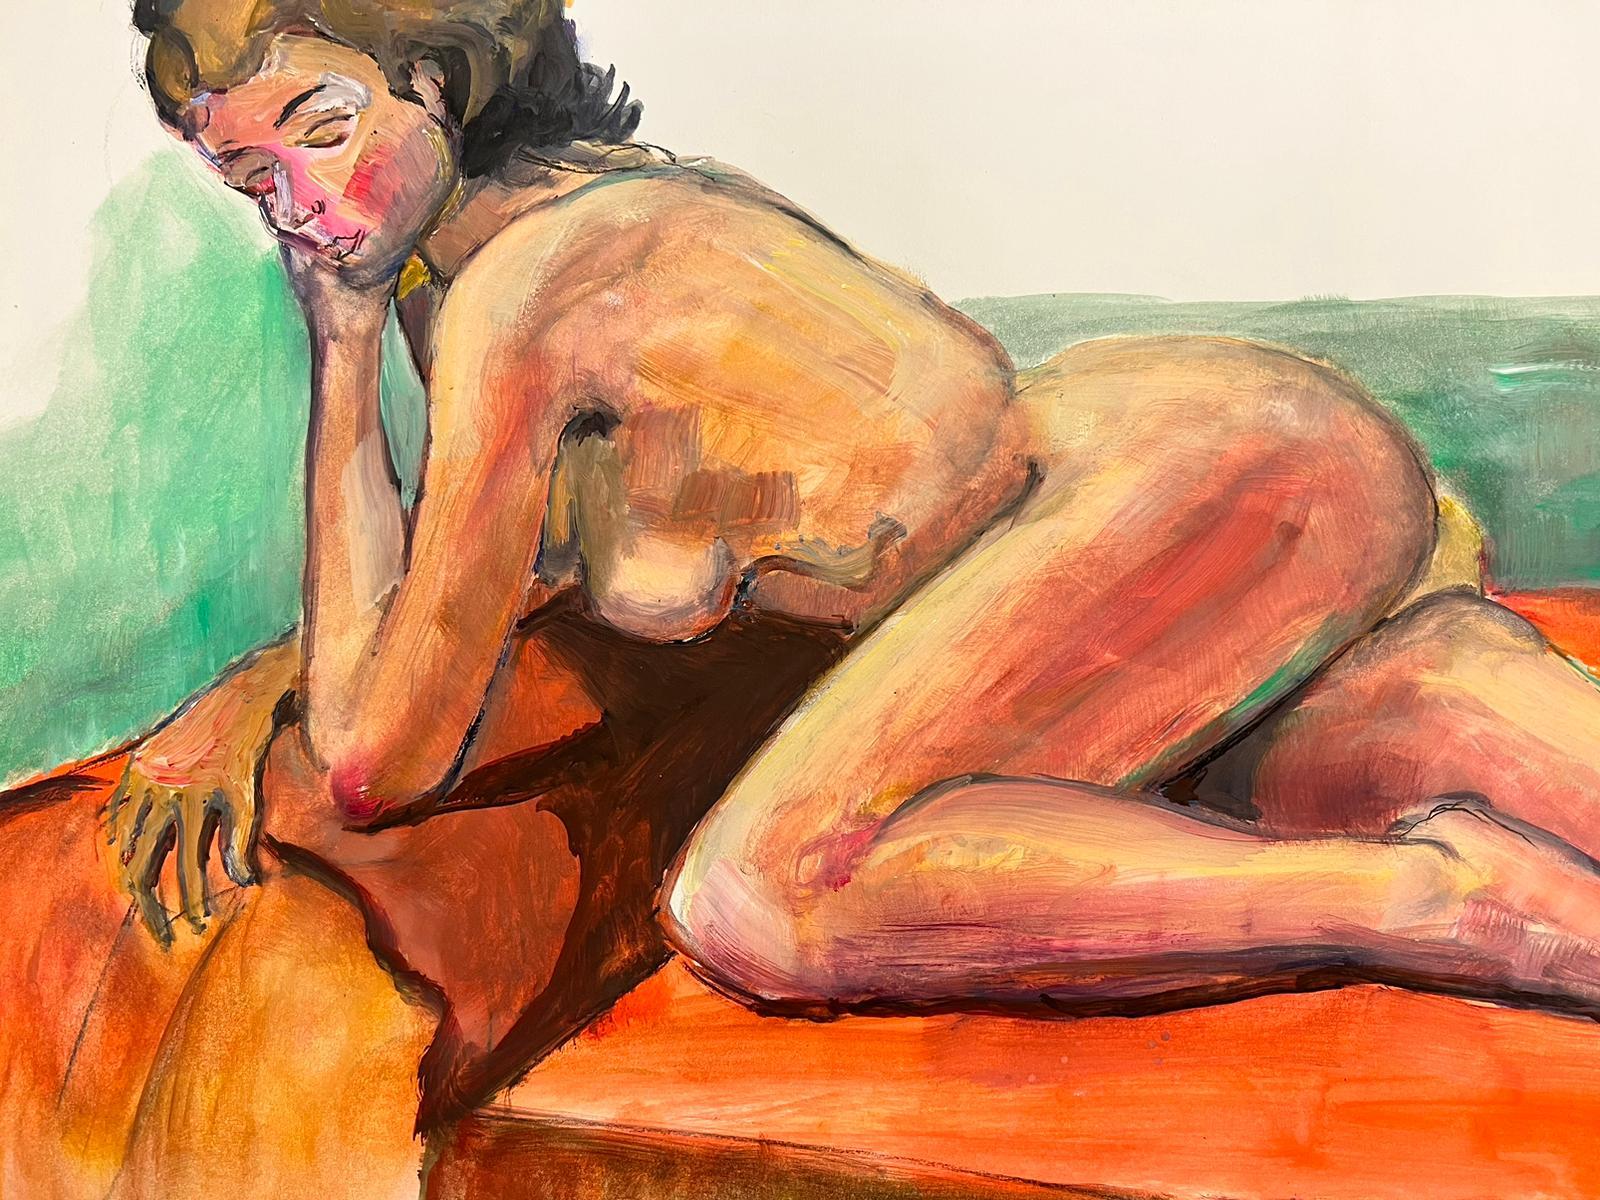 Le modèle Artistics
Portrait d'une femme nue allongée
École française, vers 1970
peinture à l'huile sur carton, non encadrée
taille : 18 x 26 pouces
état : globalement très bon, quelques légères marques à la surface mais rien de préjudiciable à